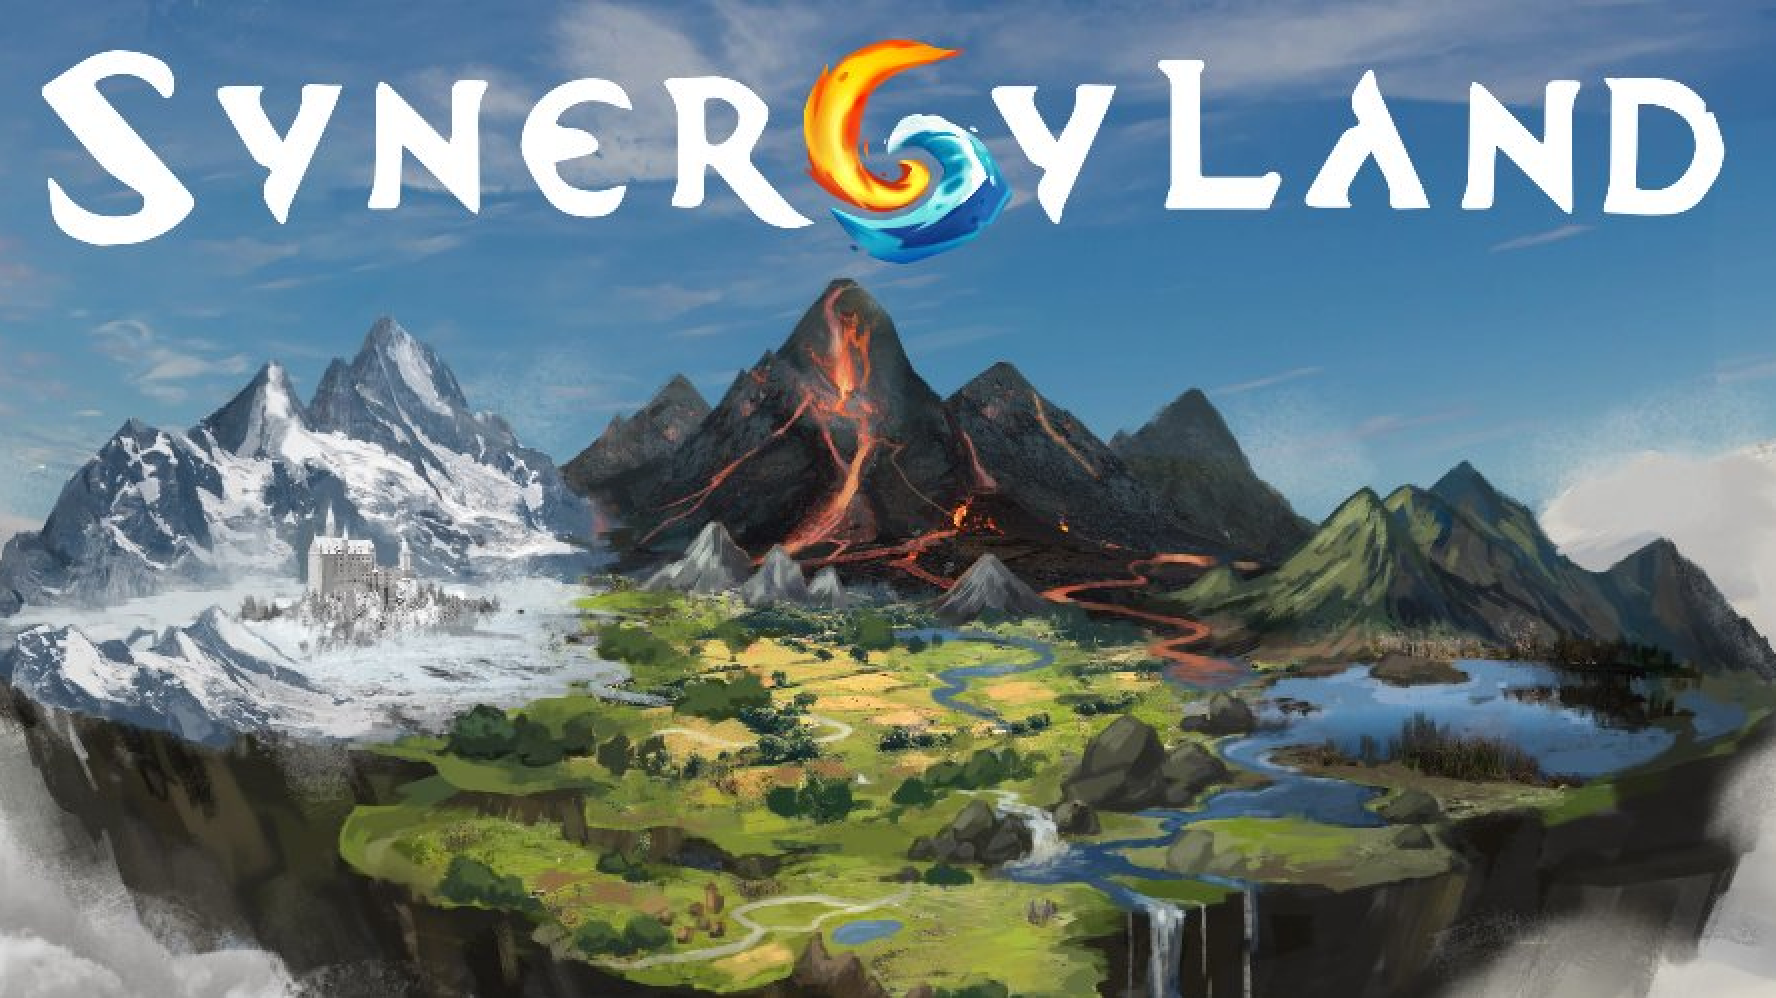 blog image of Synergy Land